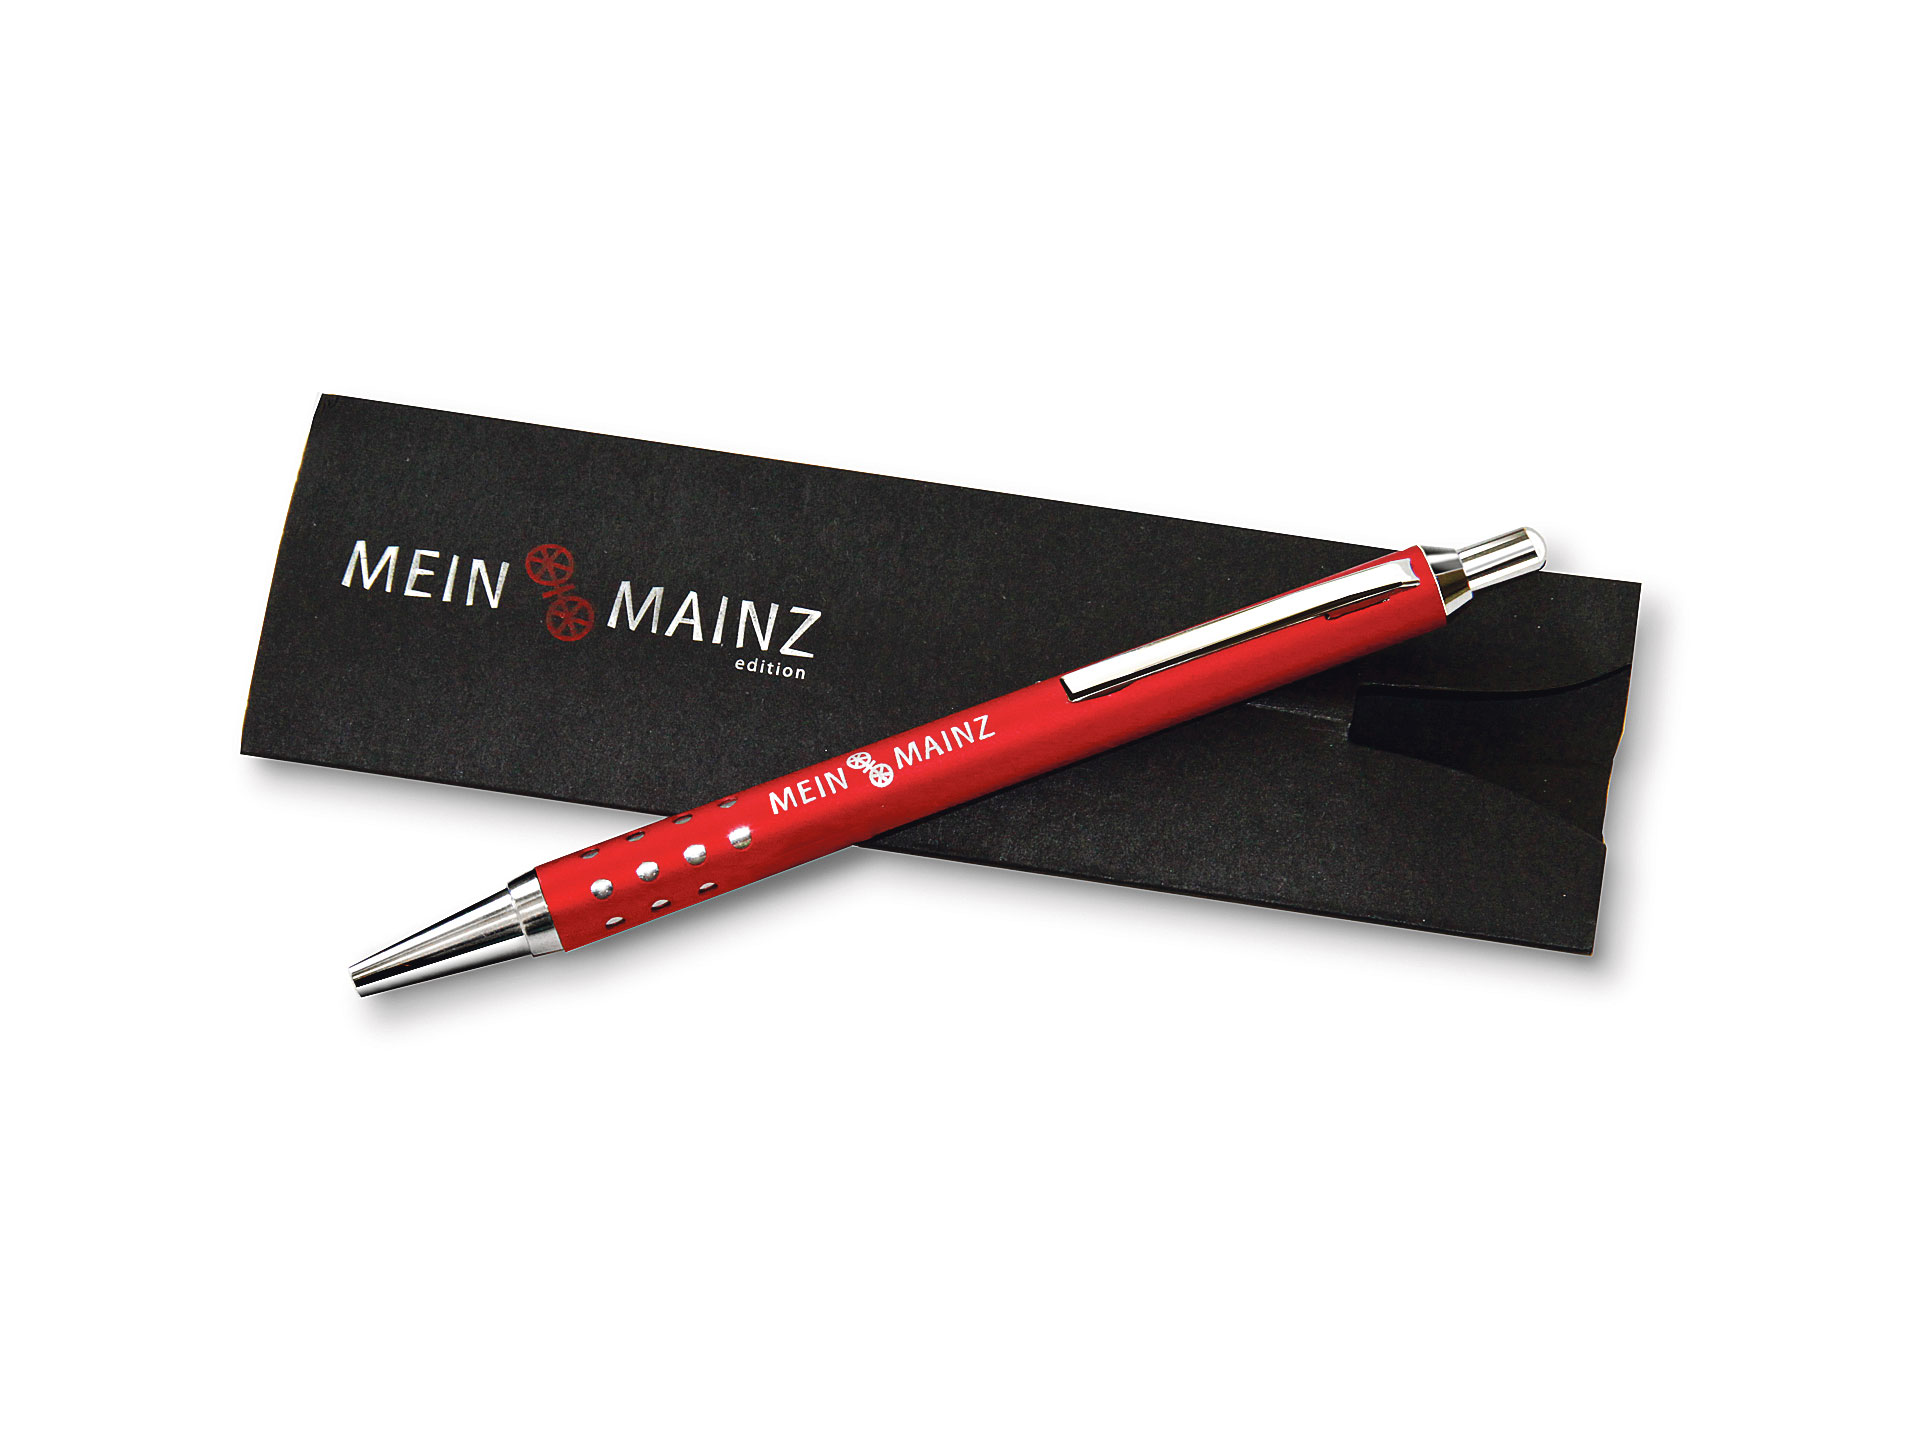 My Mainz ballpoint pen